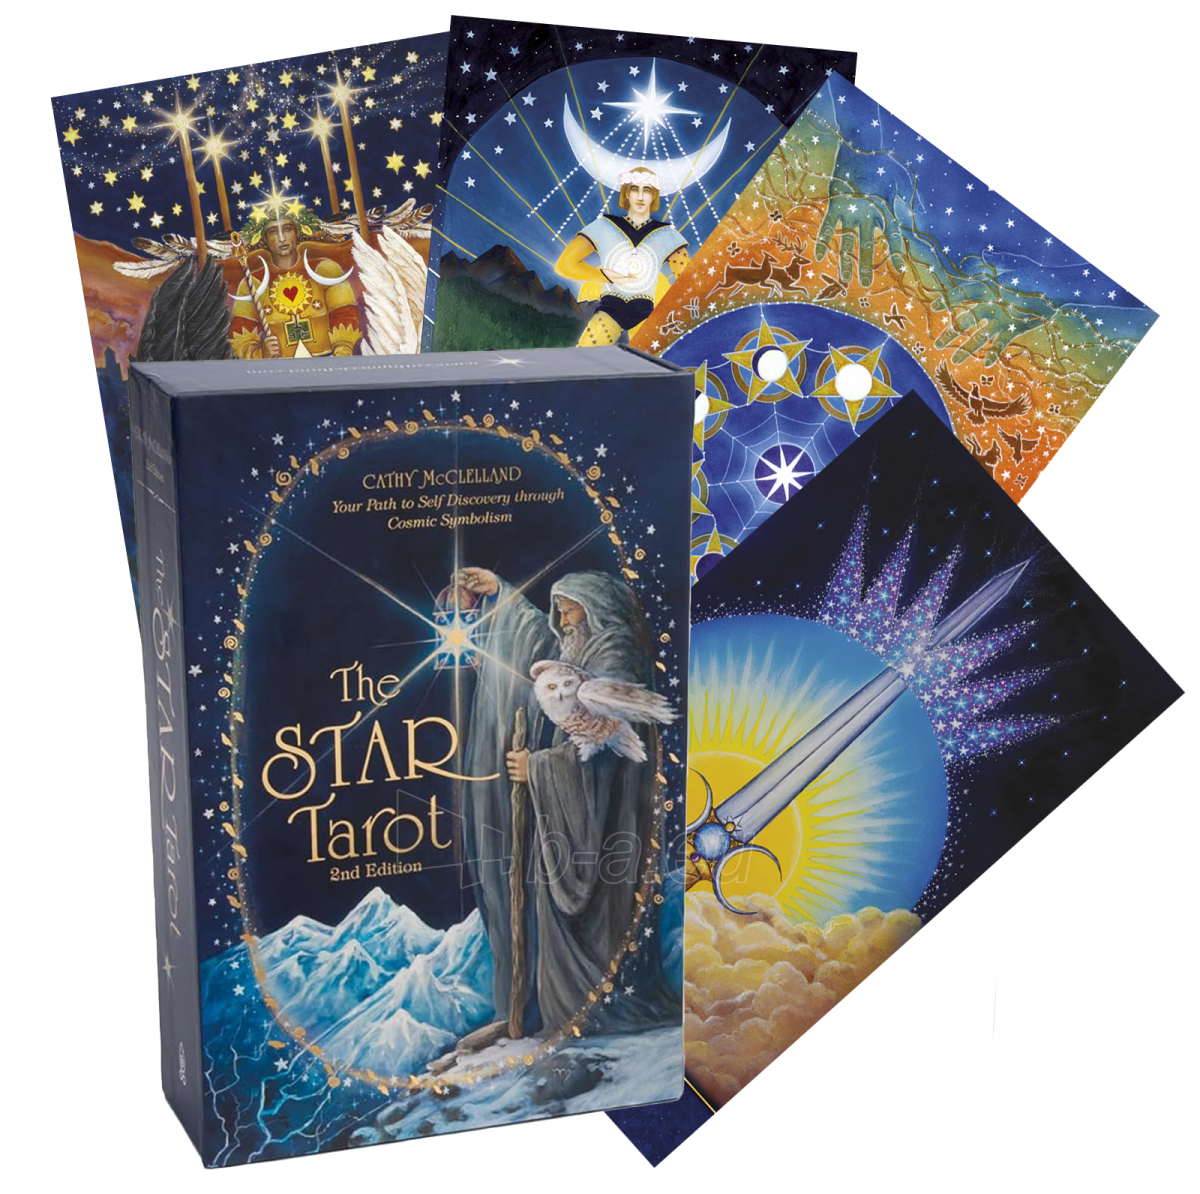 Taro kortos The Star Tarot 2nd Edition taro kortos paveikslėlis 1 iš 10